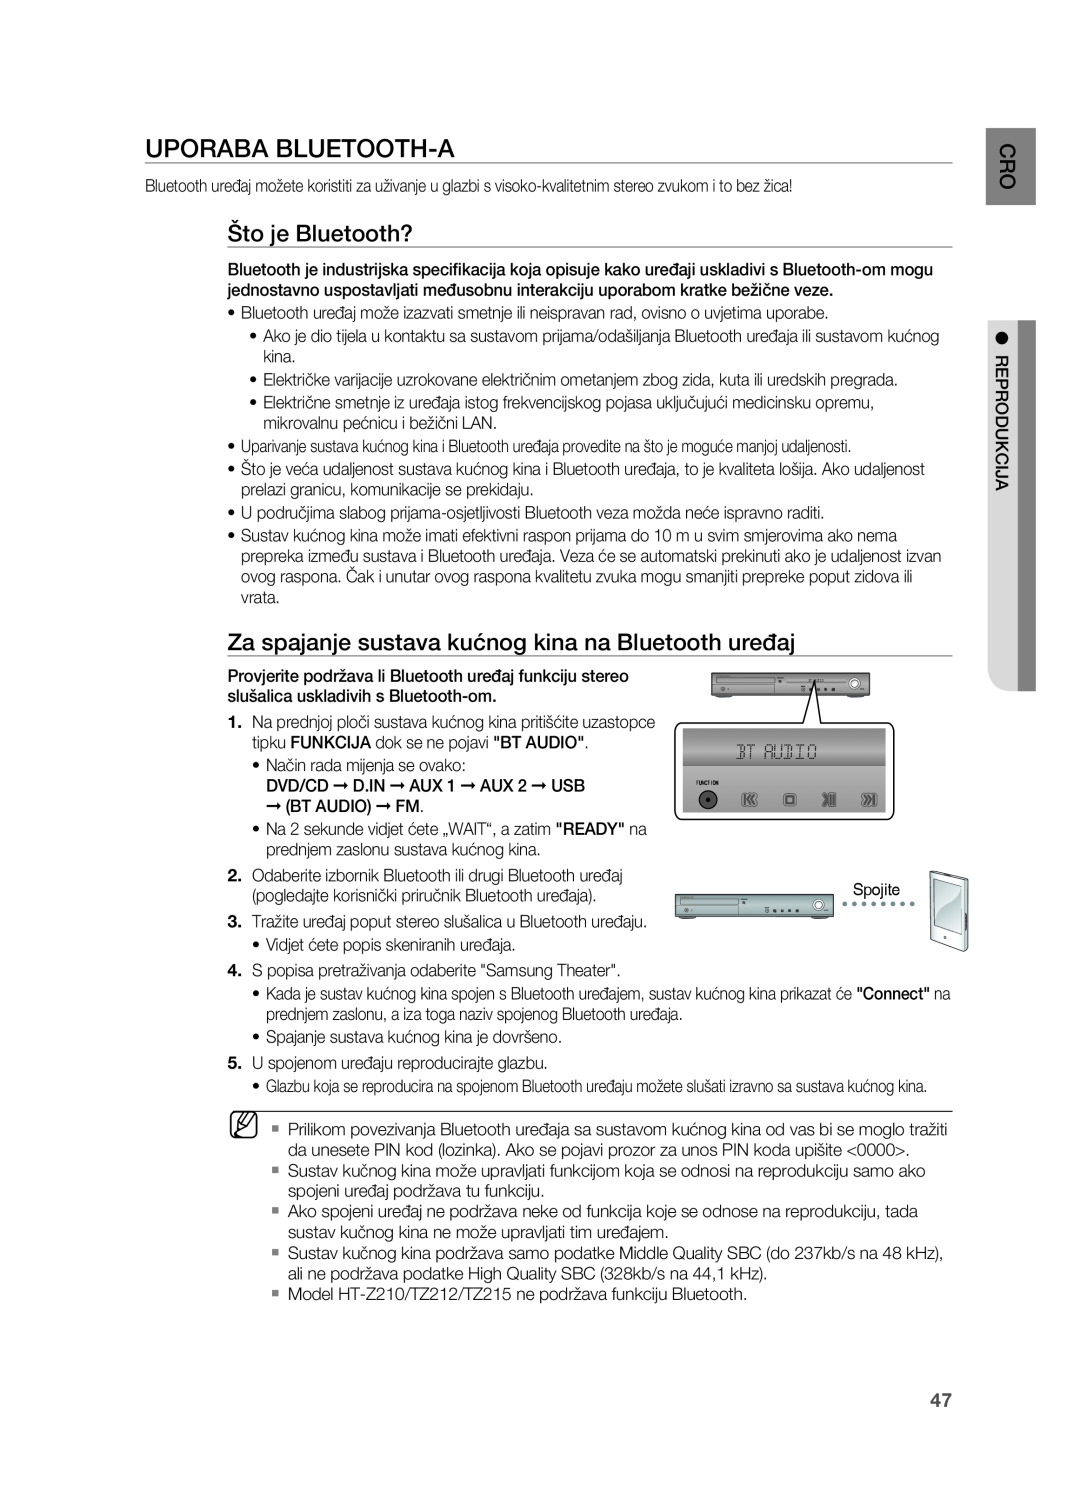 Samsung HT-TZ315R/EDC manual UPoRABA BLUETooTH-A, Što je Bluetooth?, Za spajanje sustava kućnog kina na Bluetooth uređaj 